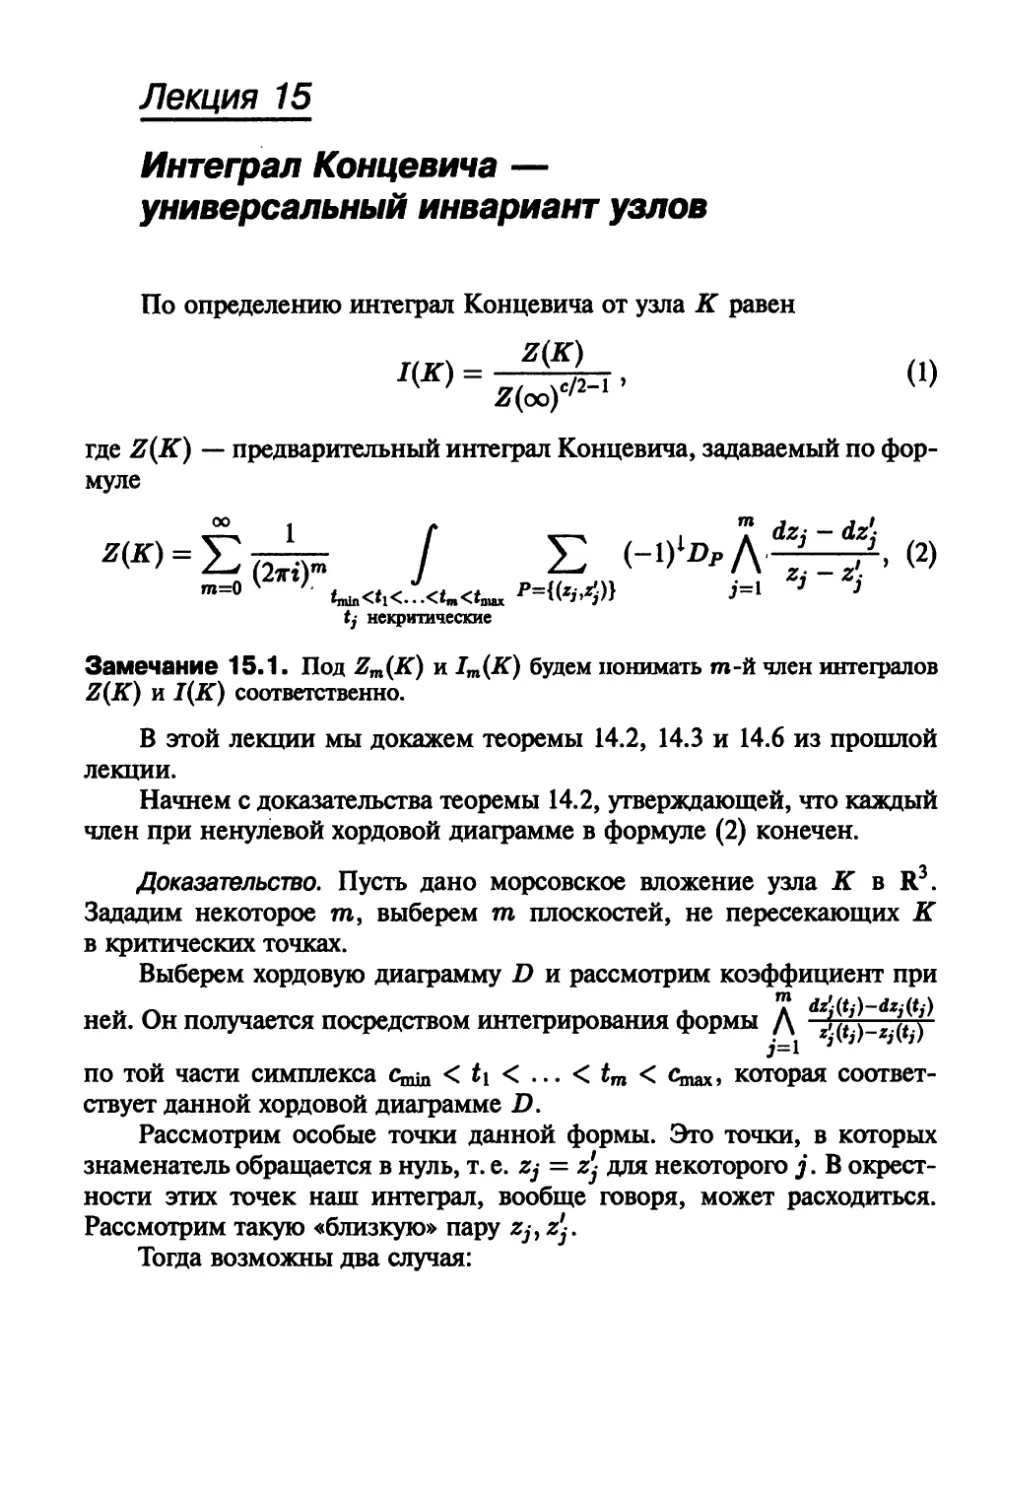 Лекция 15. Интеграл Концевича — универсальный инвариант узлов